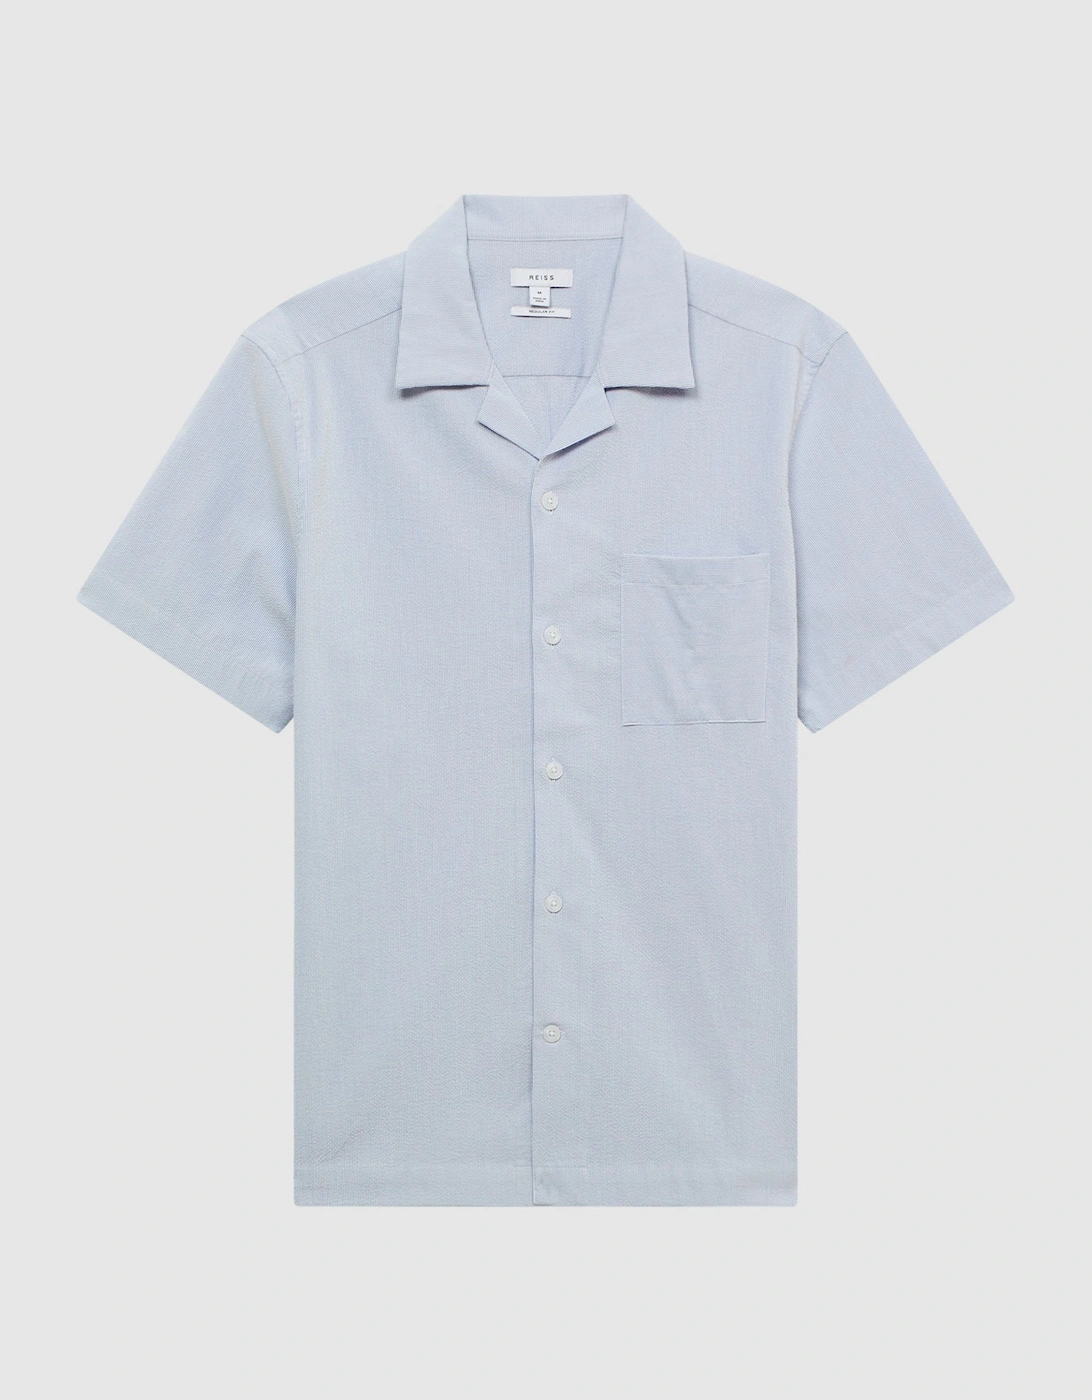 Cuban Collar Striped Short Sleeve Shirt, 2 of 1